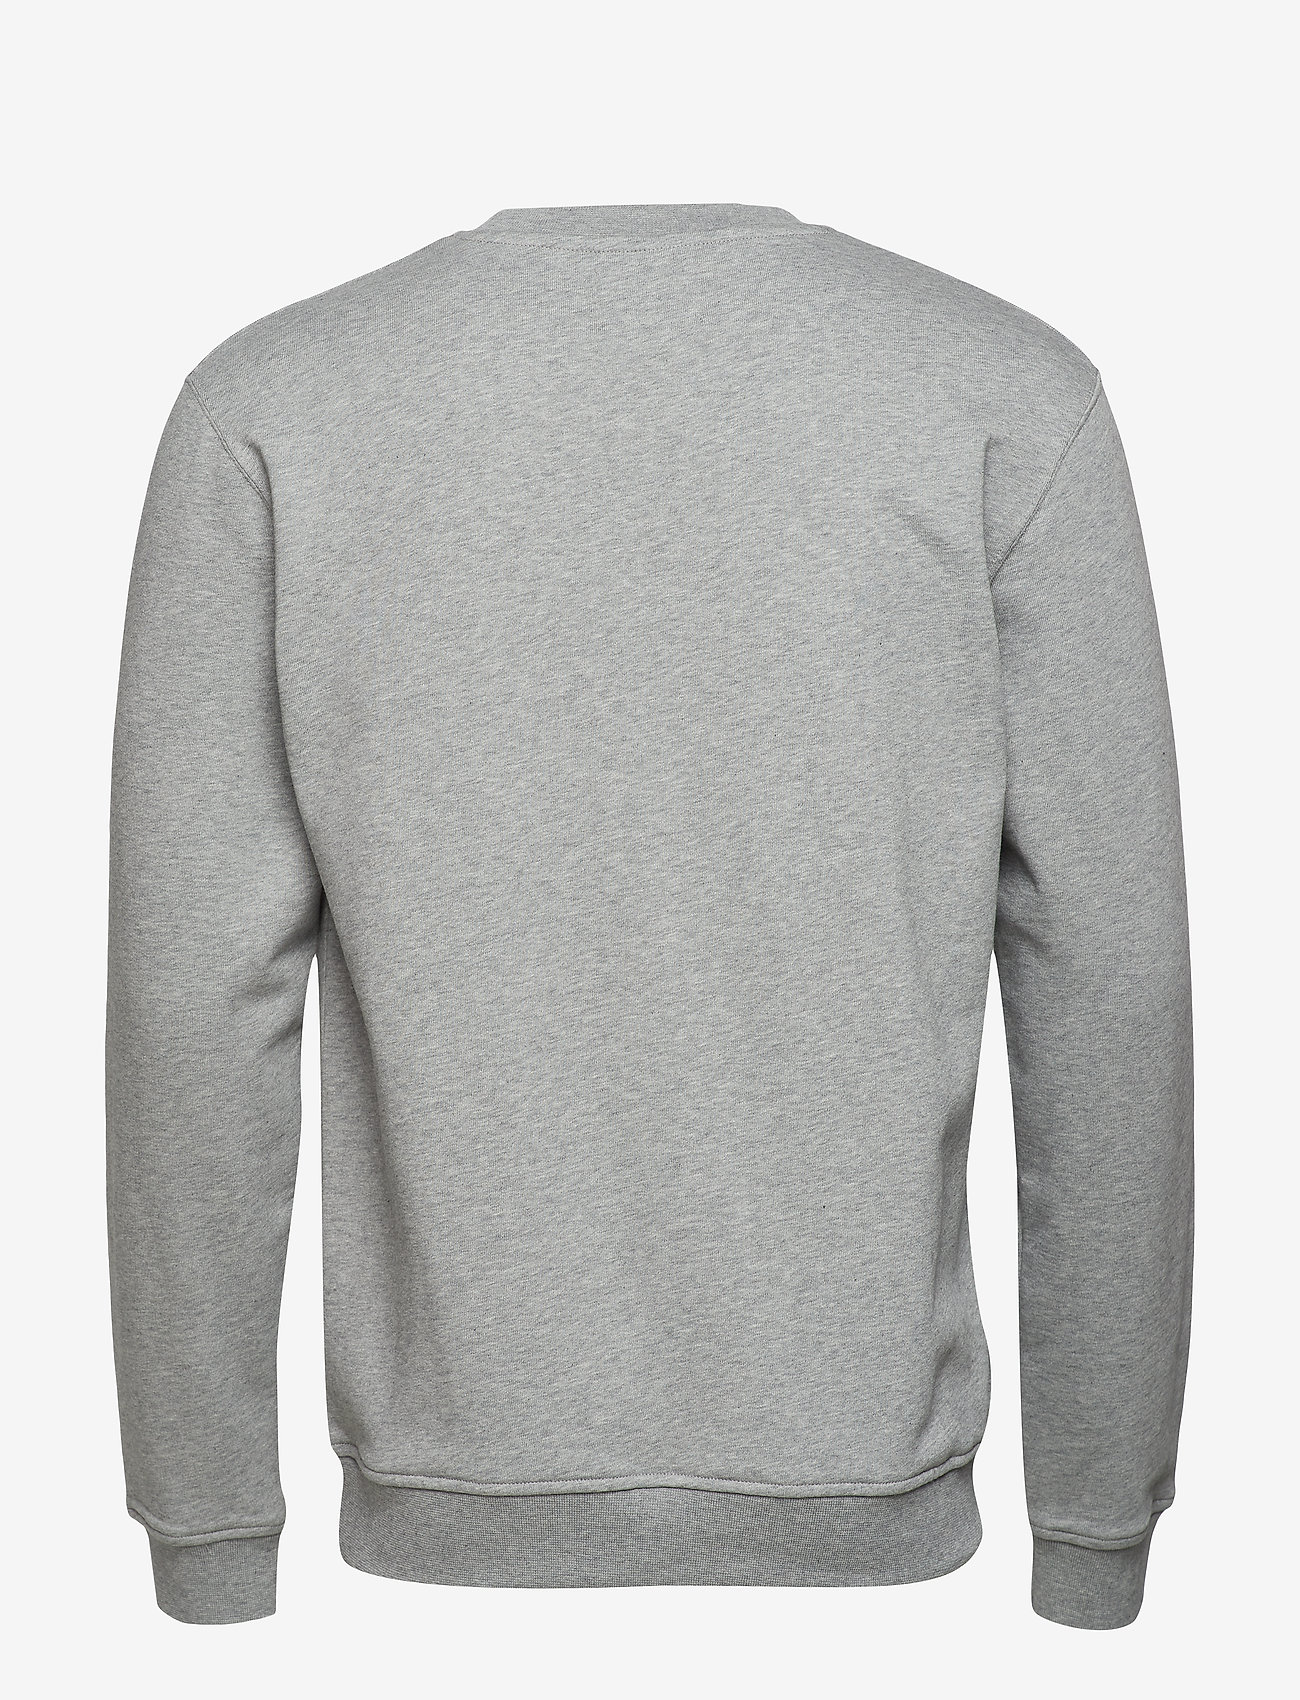 Double A by Wood Wood - Tye sweatshirt - sweatshirts - grey melange - 1